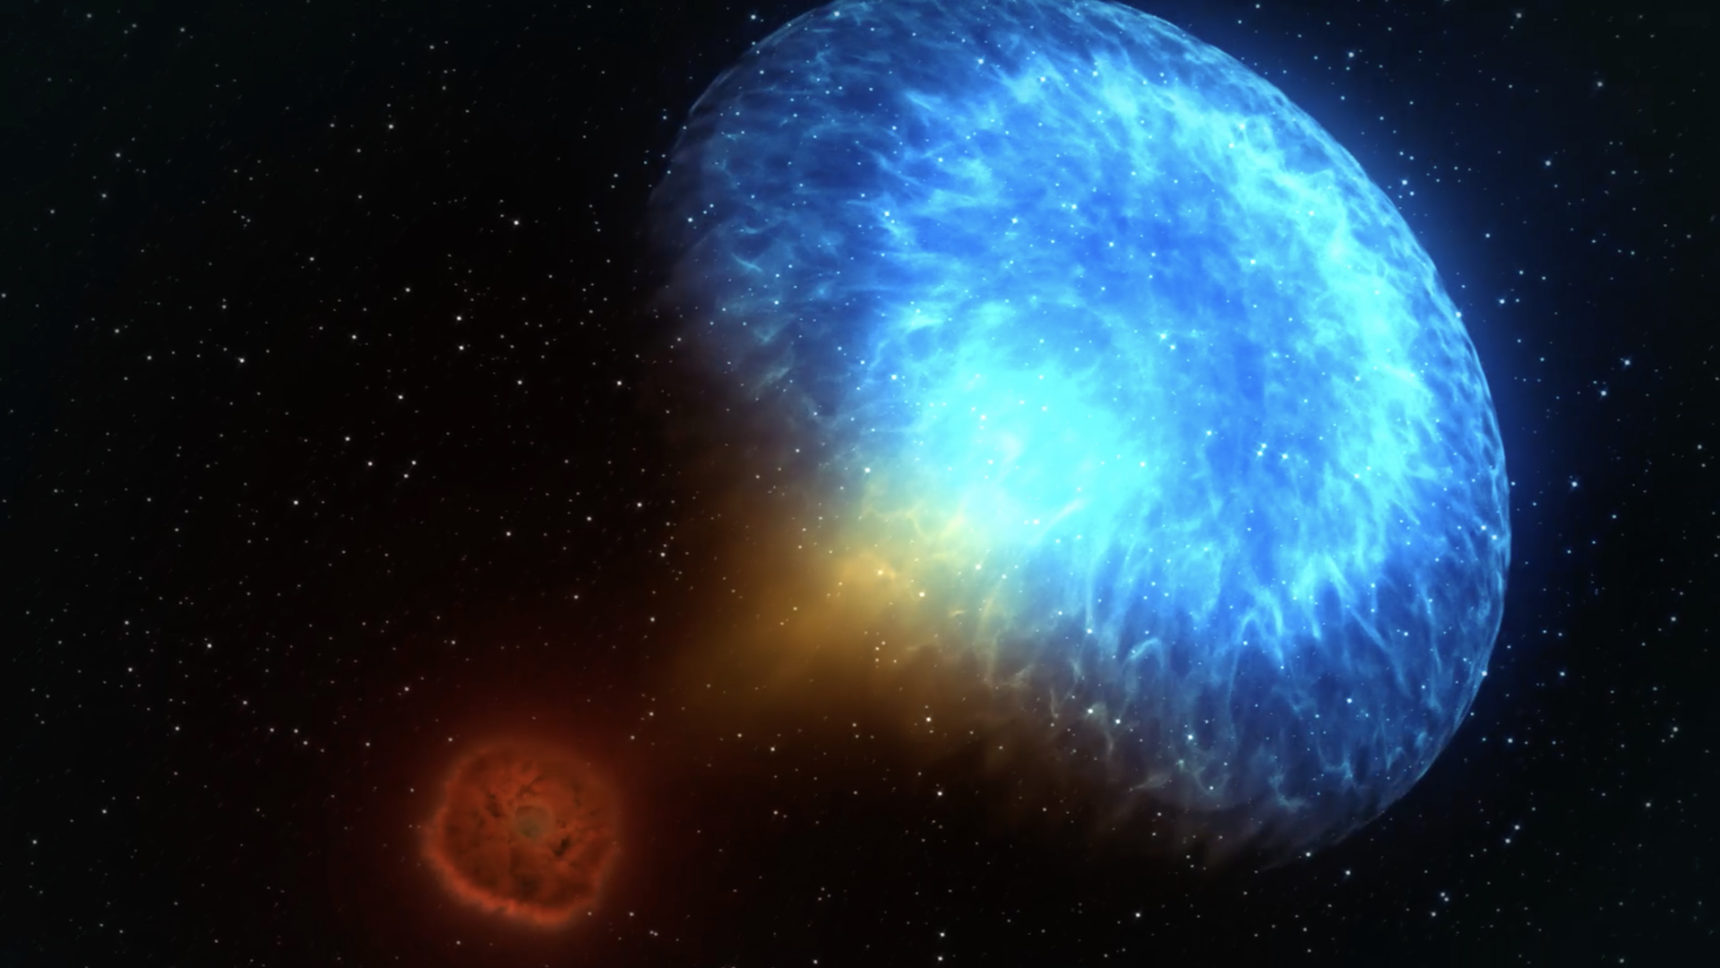 中子星是一颗巨大的超巨星的坍缩核心,总质量介于10到25个太阳质量